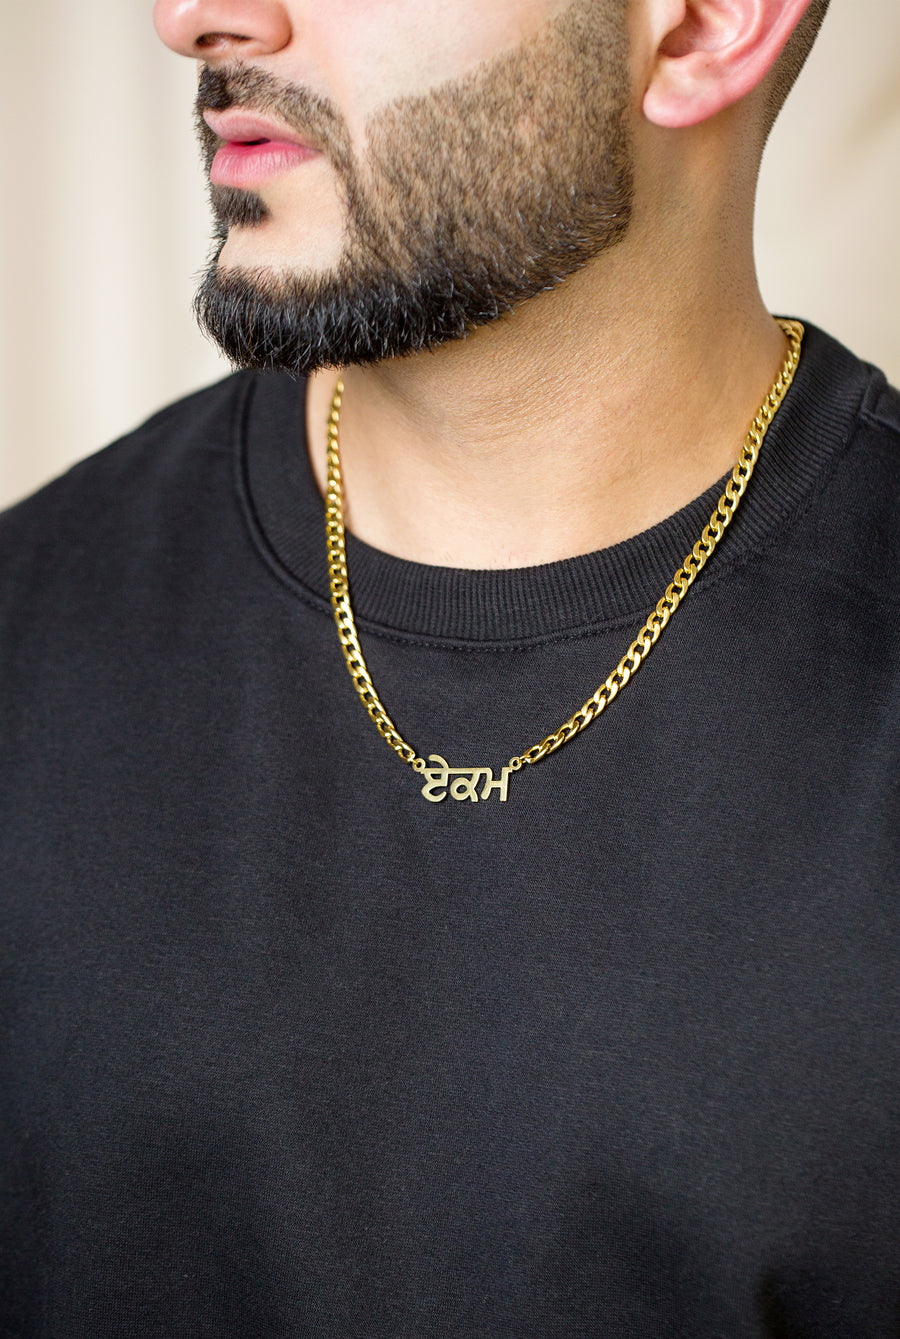 Personalized Punjabi Name Necklace